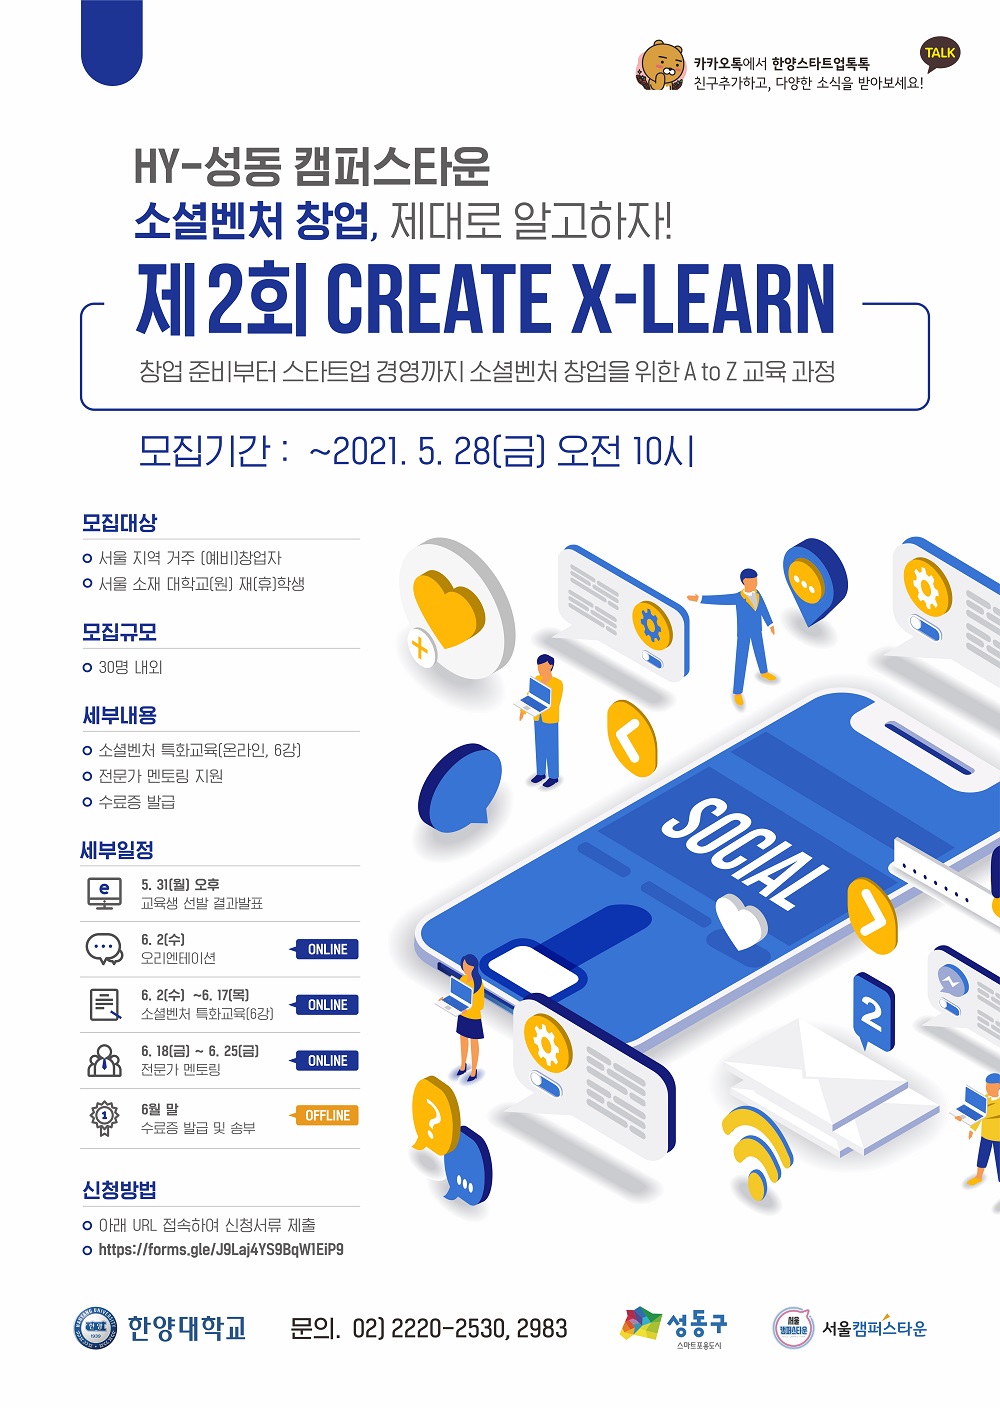 캠퍼스타운 소셜벤처 창업특화교육 제2회 Create X -Learn 참가모집(~5/28)